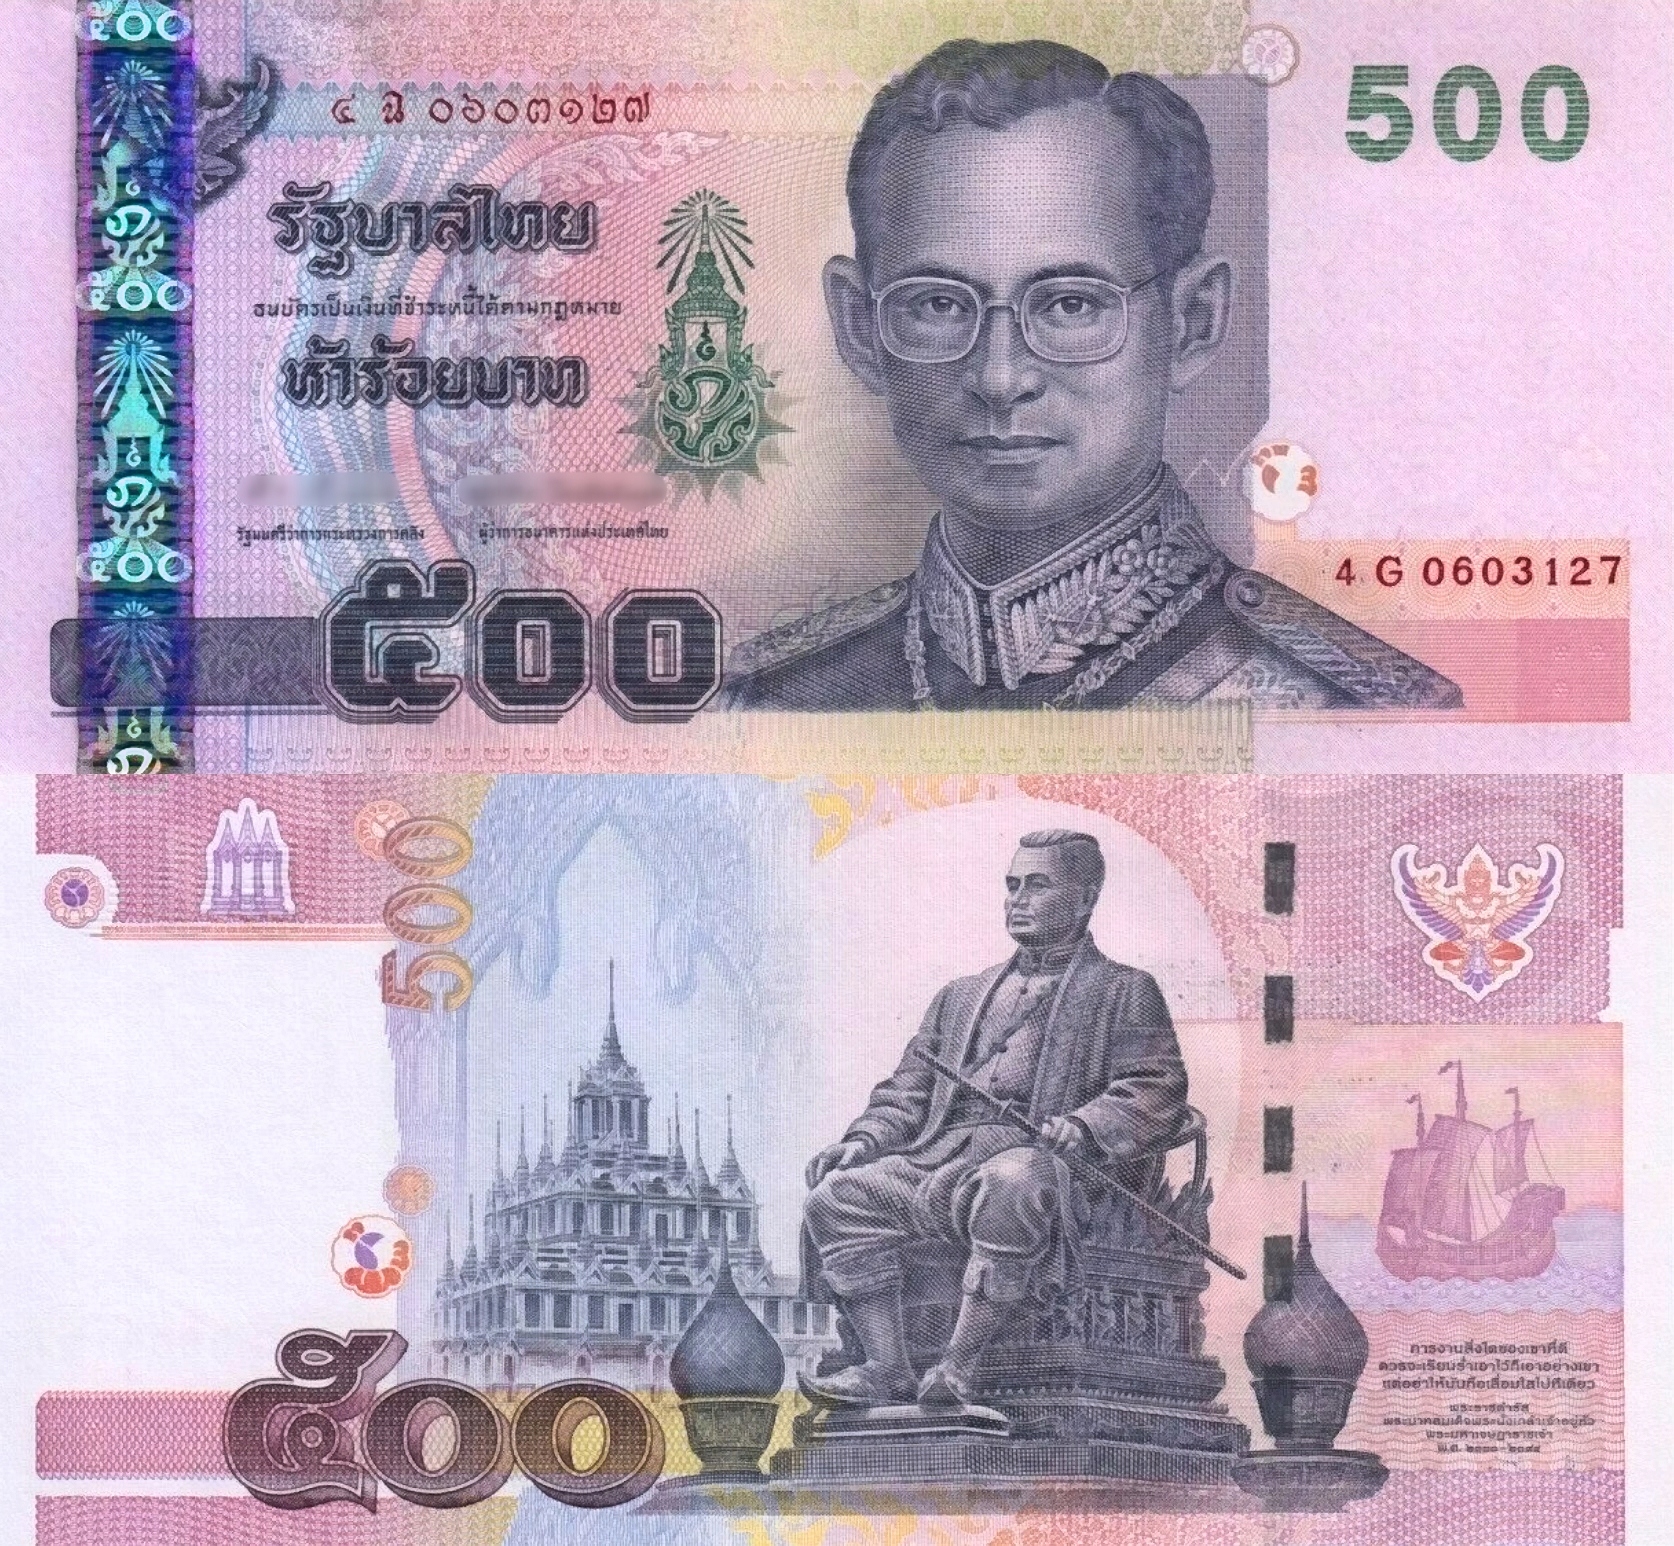 500 батов в рублях. Купюры Тайланда. 20000 Купюра тайская. Юбилейные банкноты Таиланда.